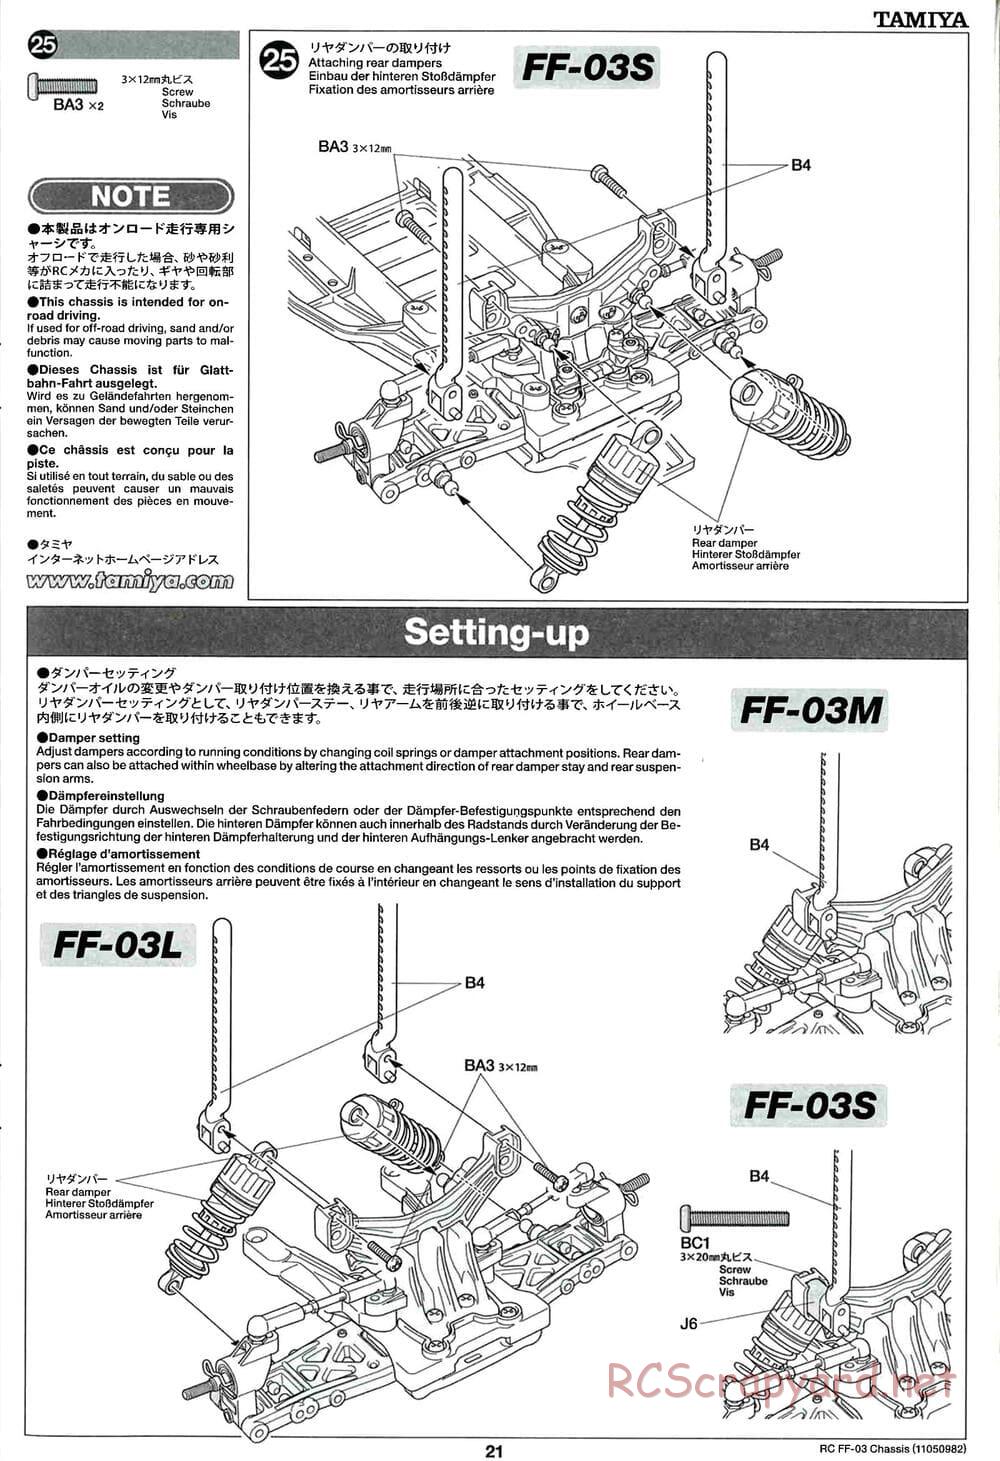 Tamiya - Honda Accord Aero Custom - FF-03 Chassis - Manual - Page 21